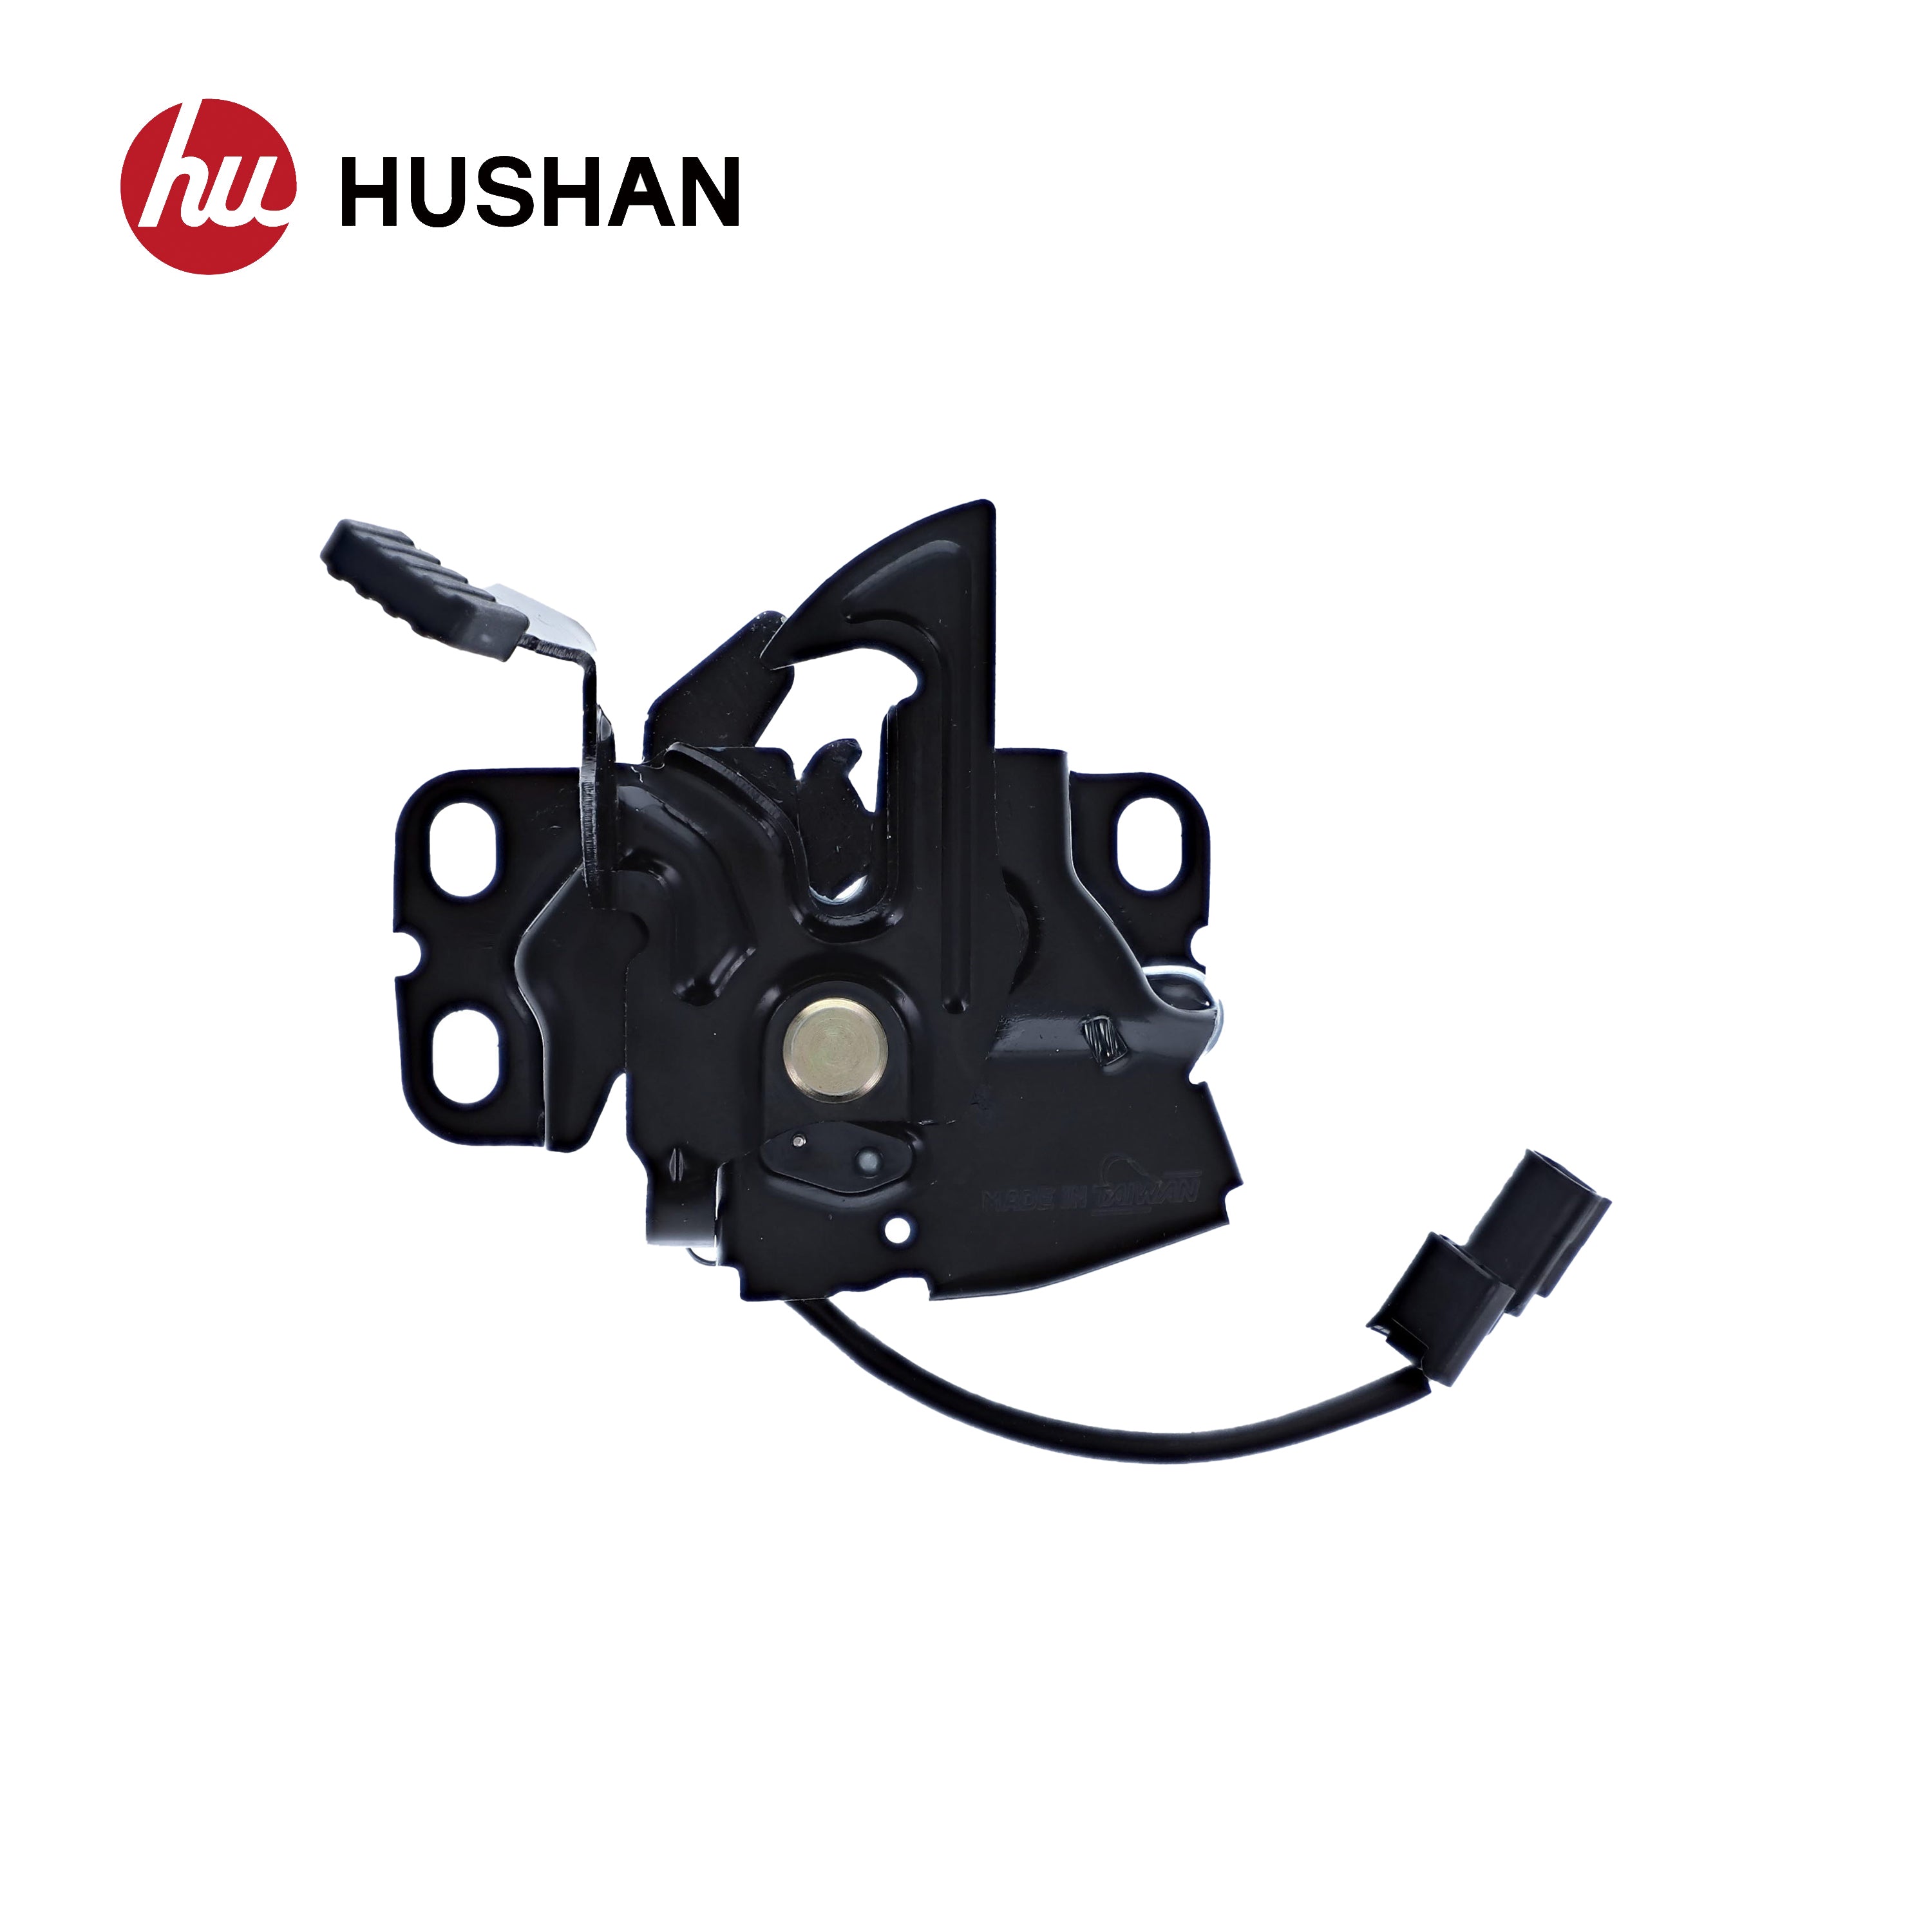 HU-HD4310-LHD - 0